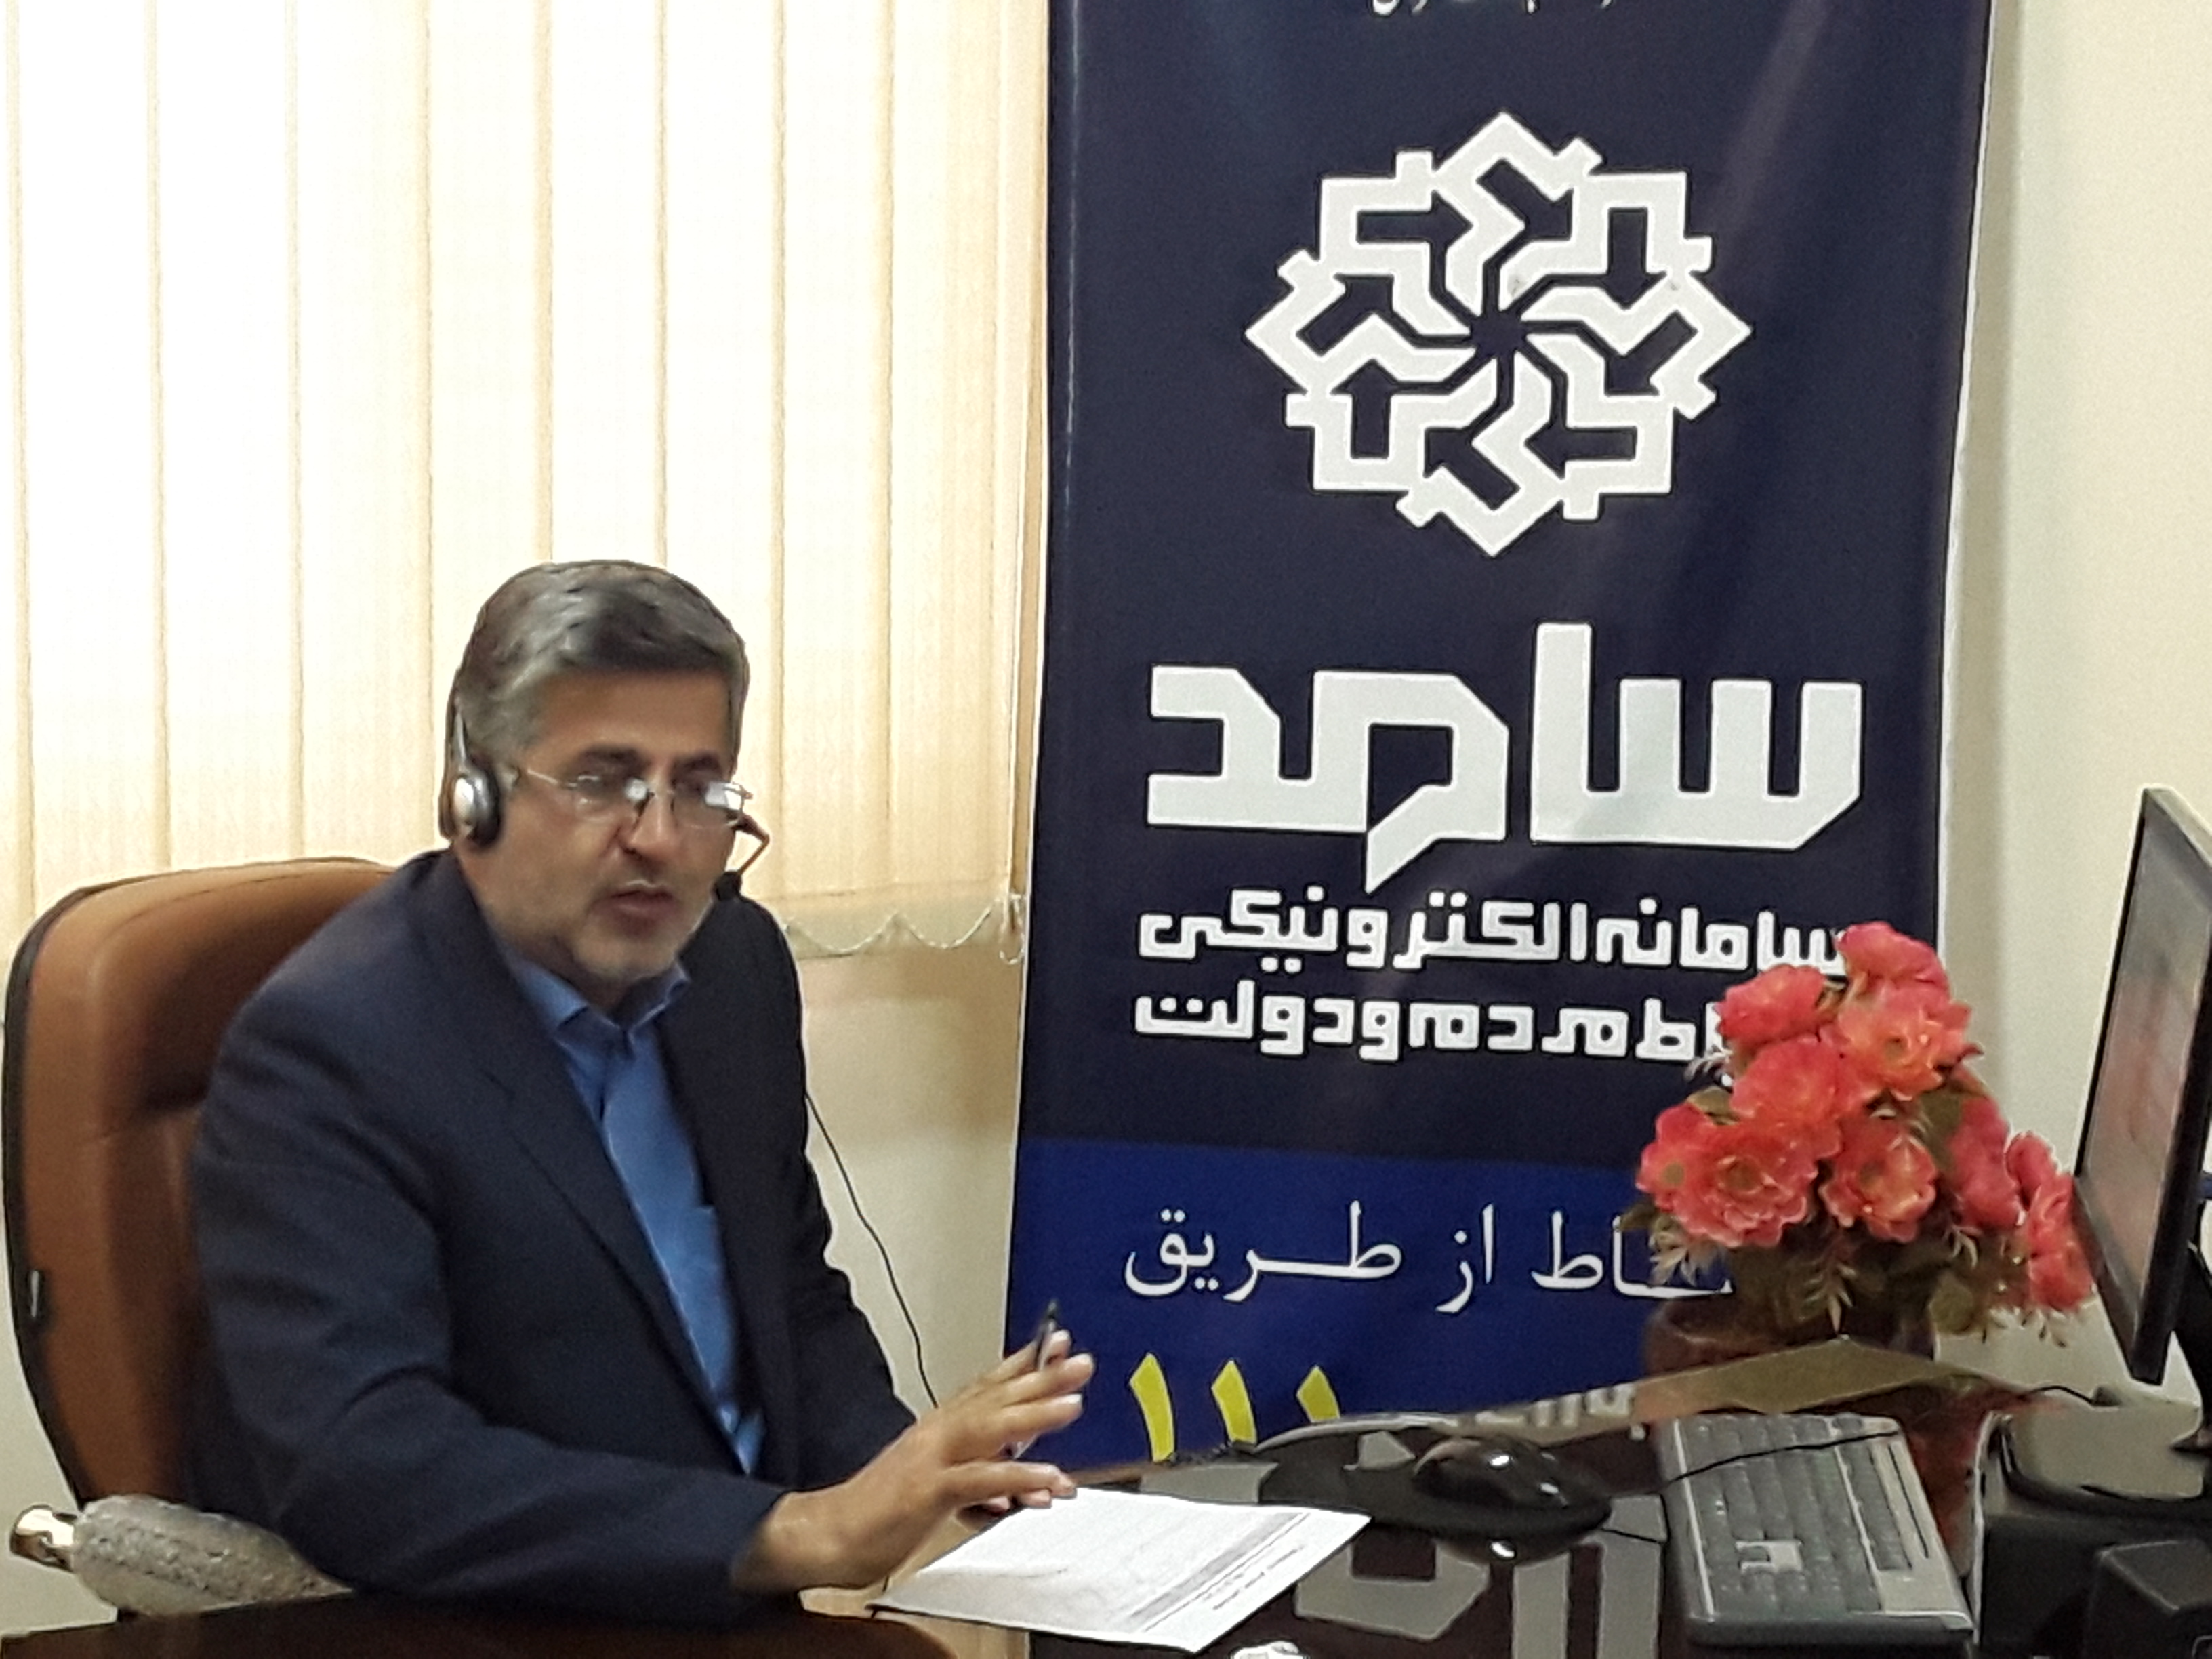 مدیرکل شیلات مازندران باحضوردرمرکزارتباطات مردمی استان (سامد) پاسخگوی تلفنی مردم بود